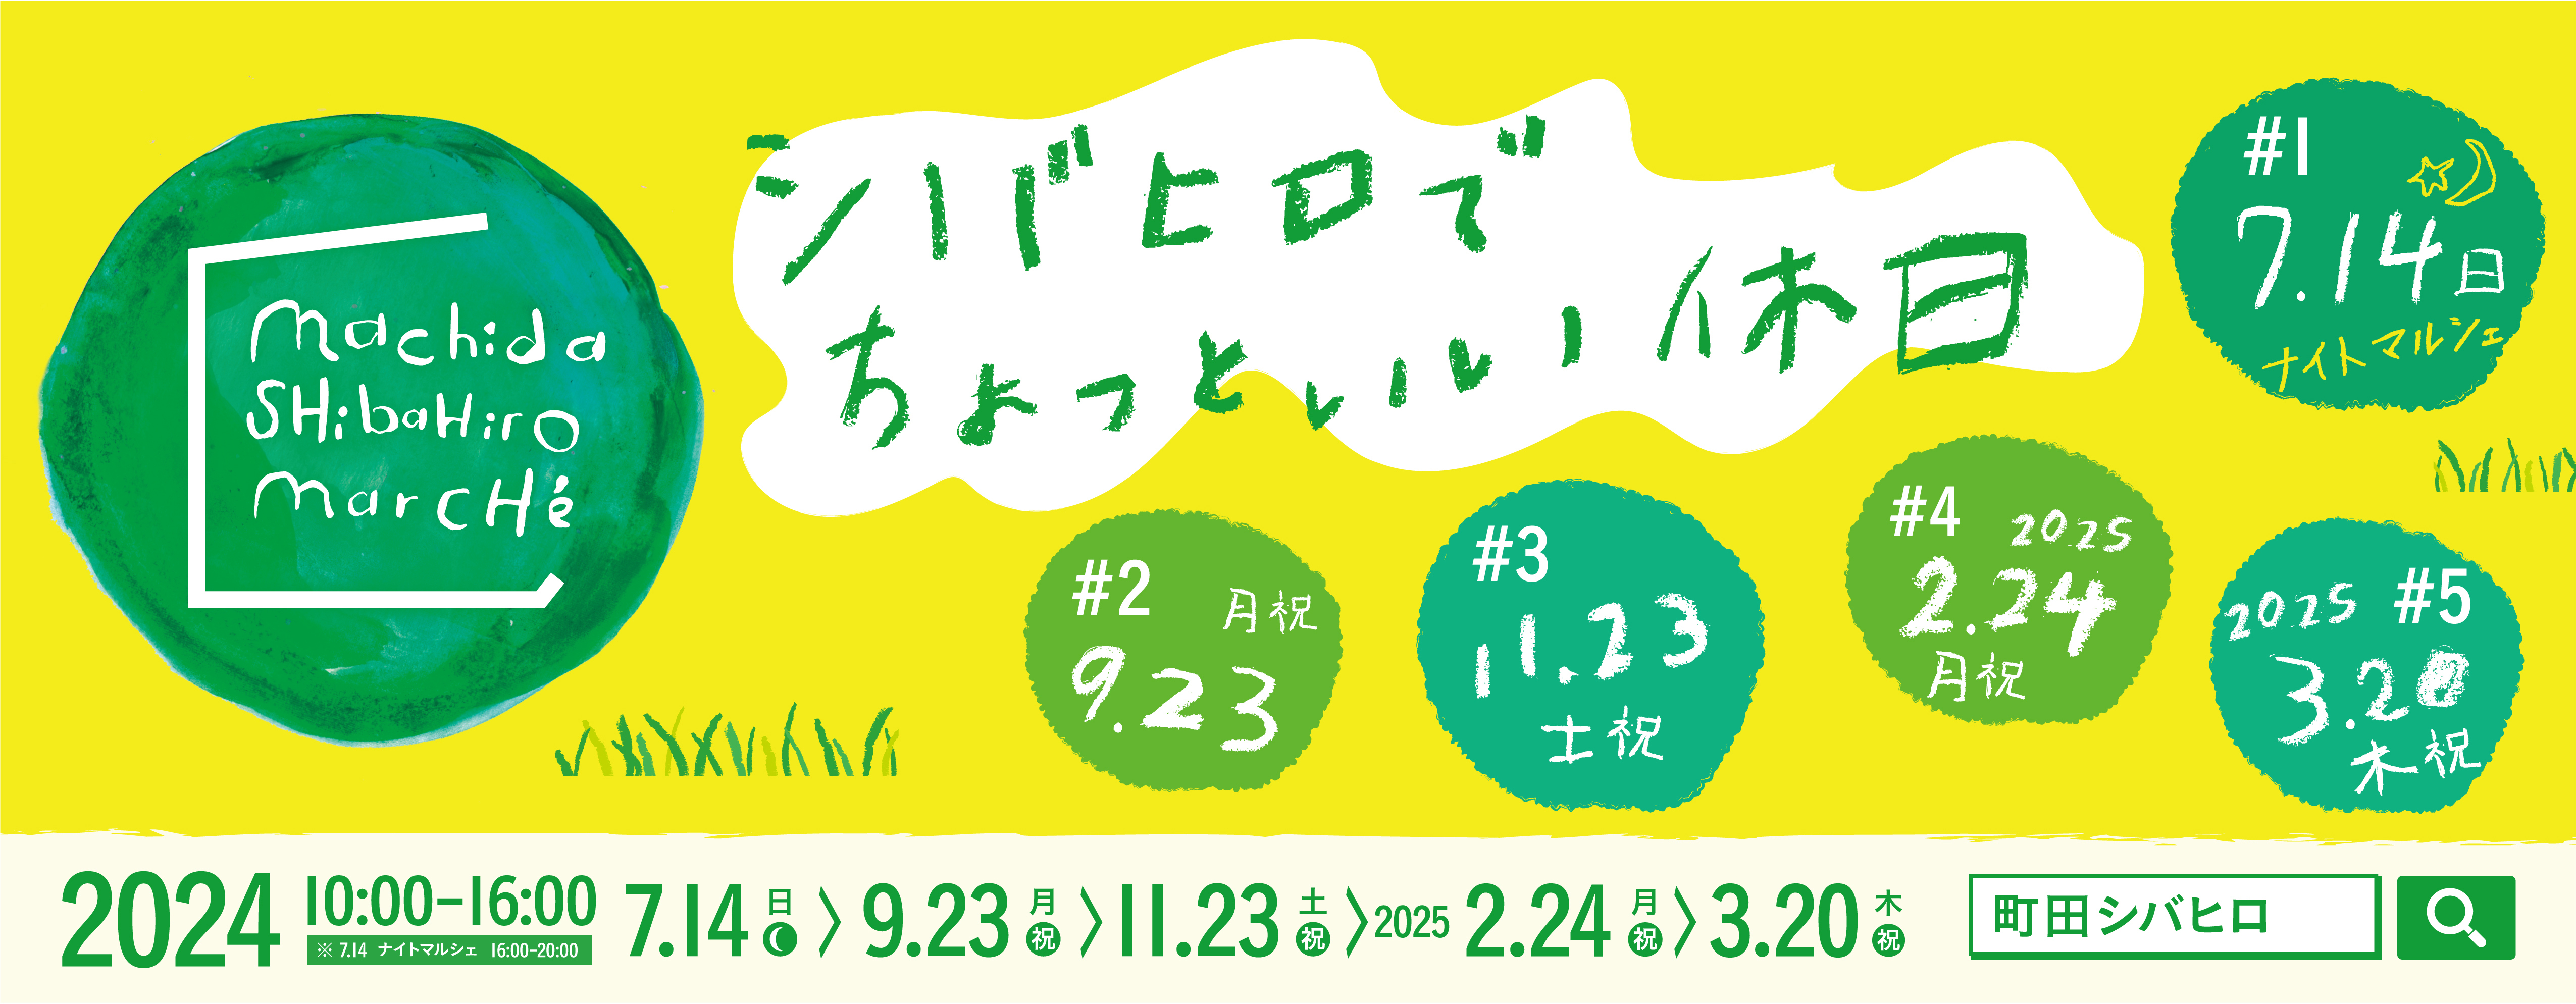 祝　町田シバヒロ開園10周年企画 第2弾　
ナイトマルシェでお買物しながら花火鑑賞！？